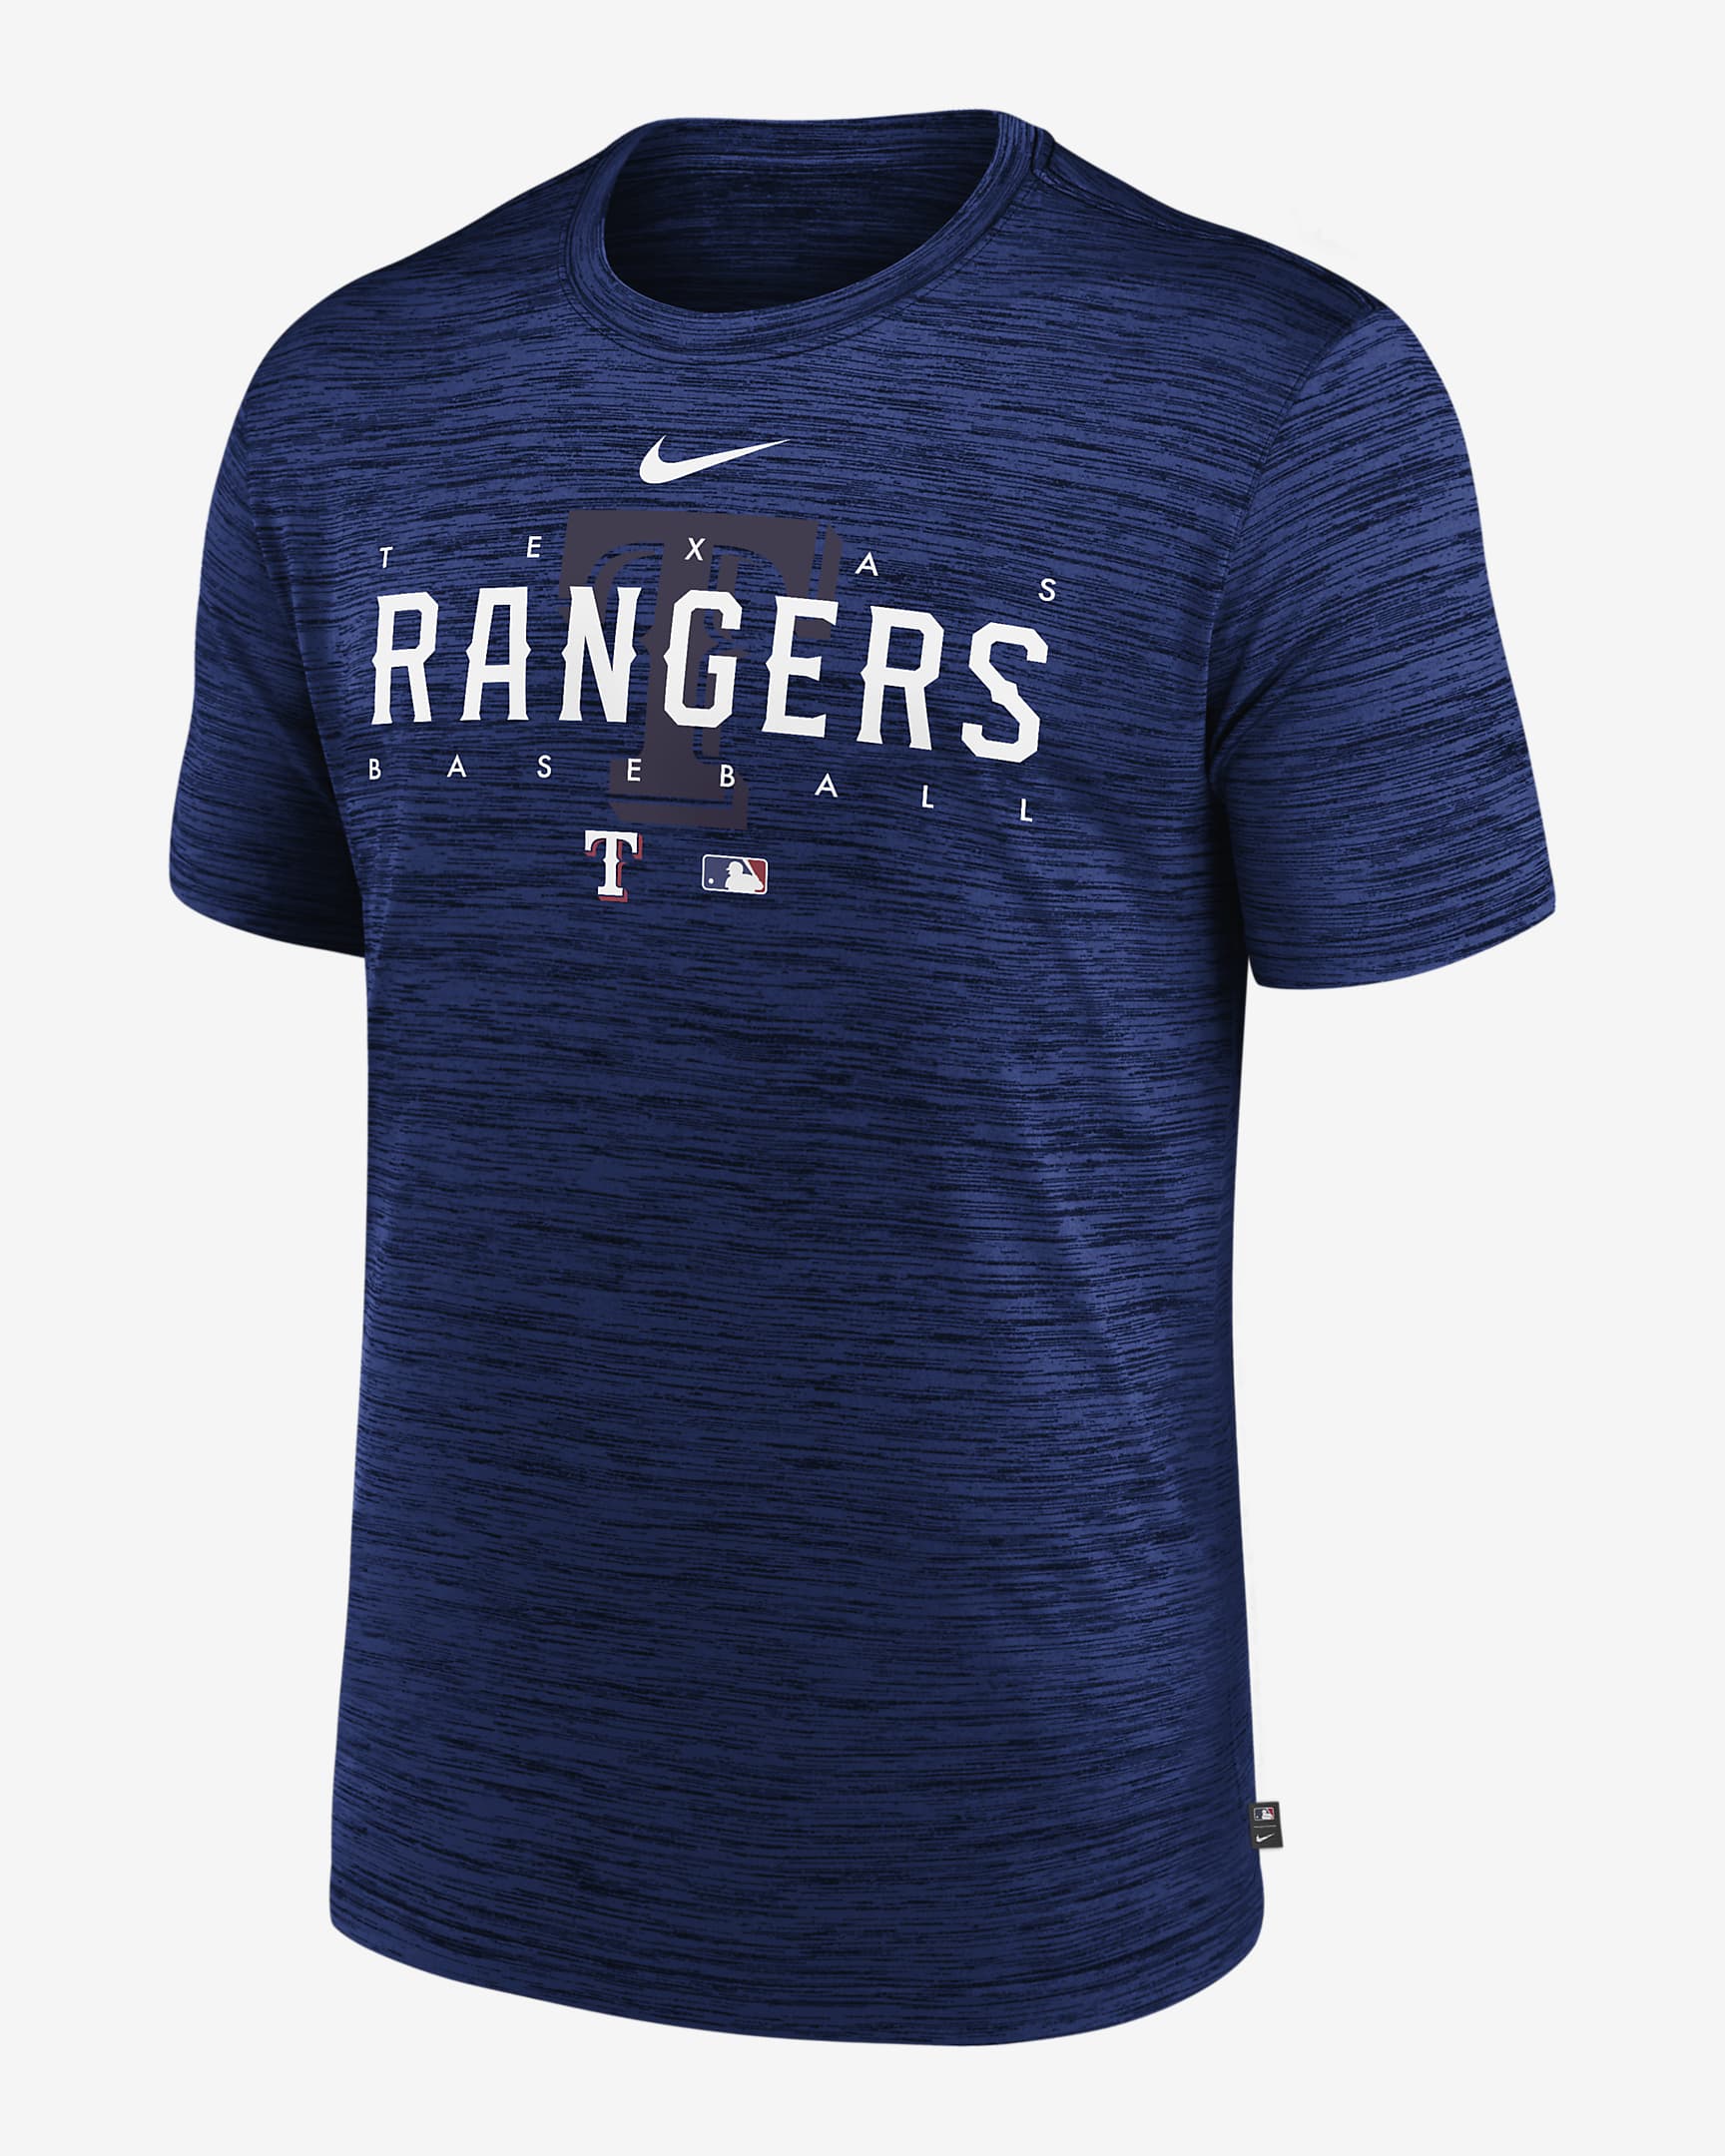 Nike Dri-FIT Velocity Practice (MLB Texas Rangers) Men's T-Shirt. Nike.com